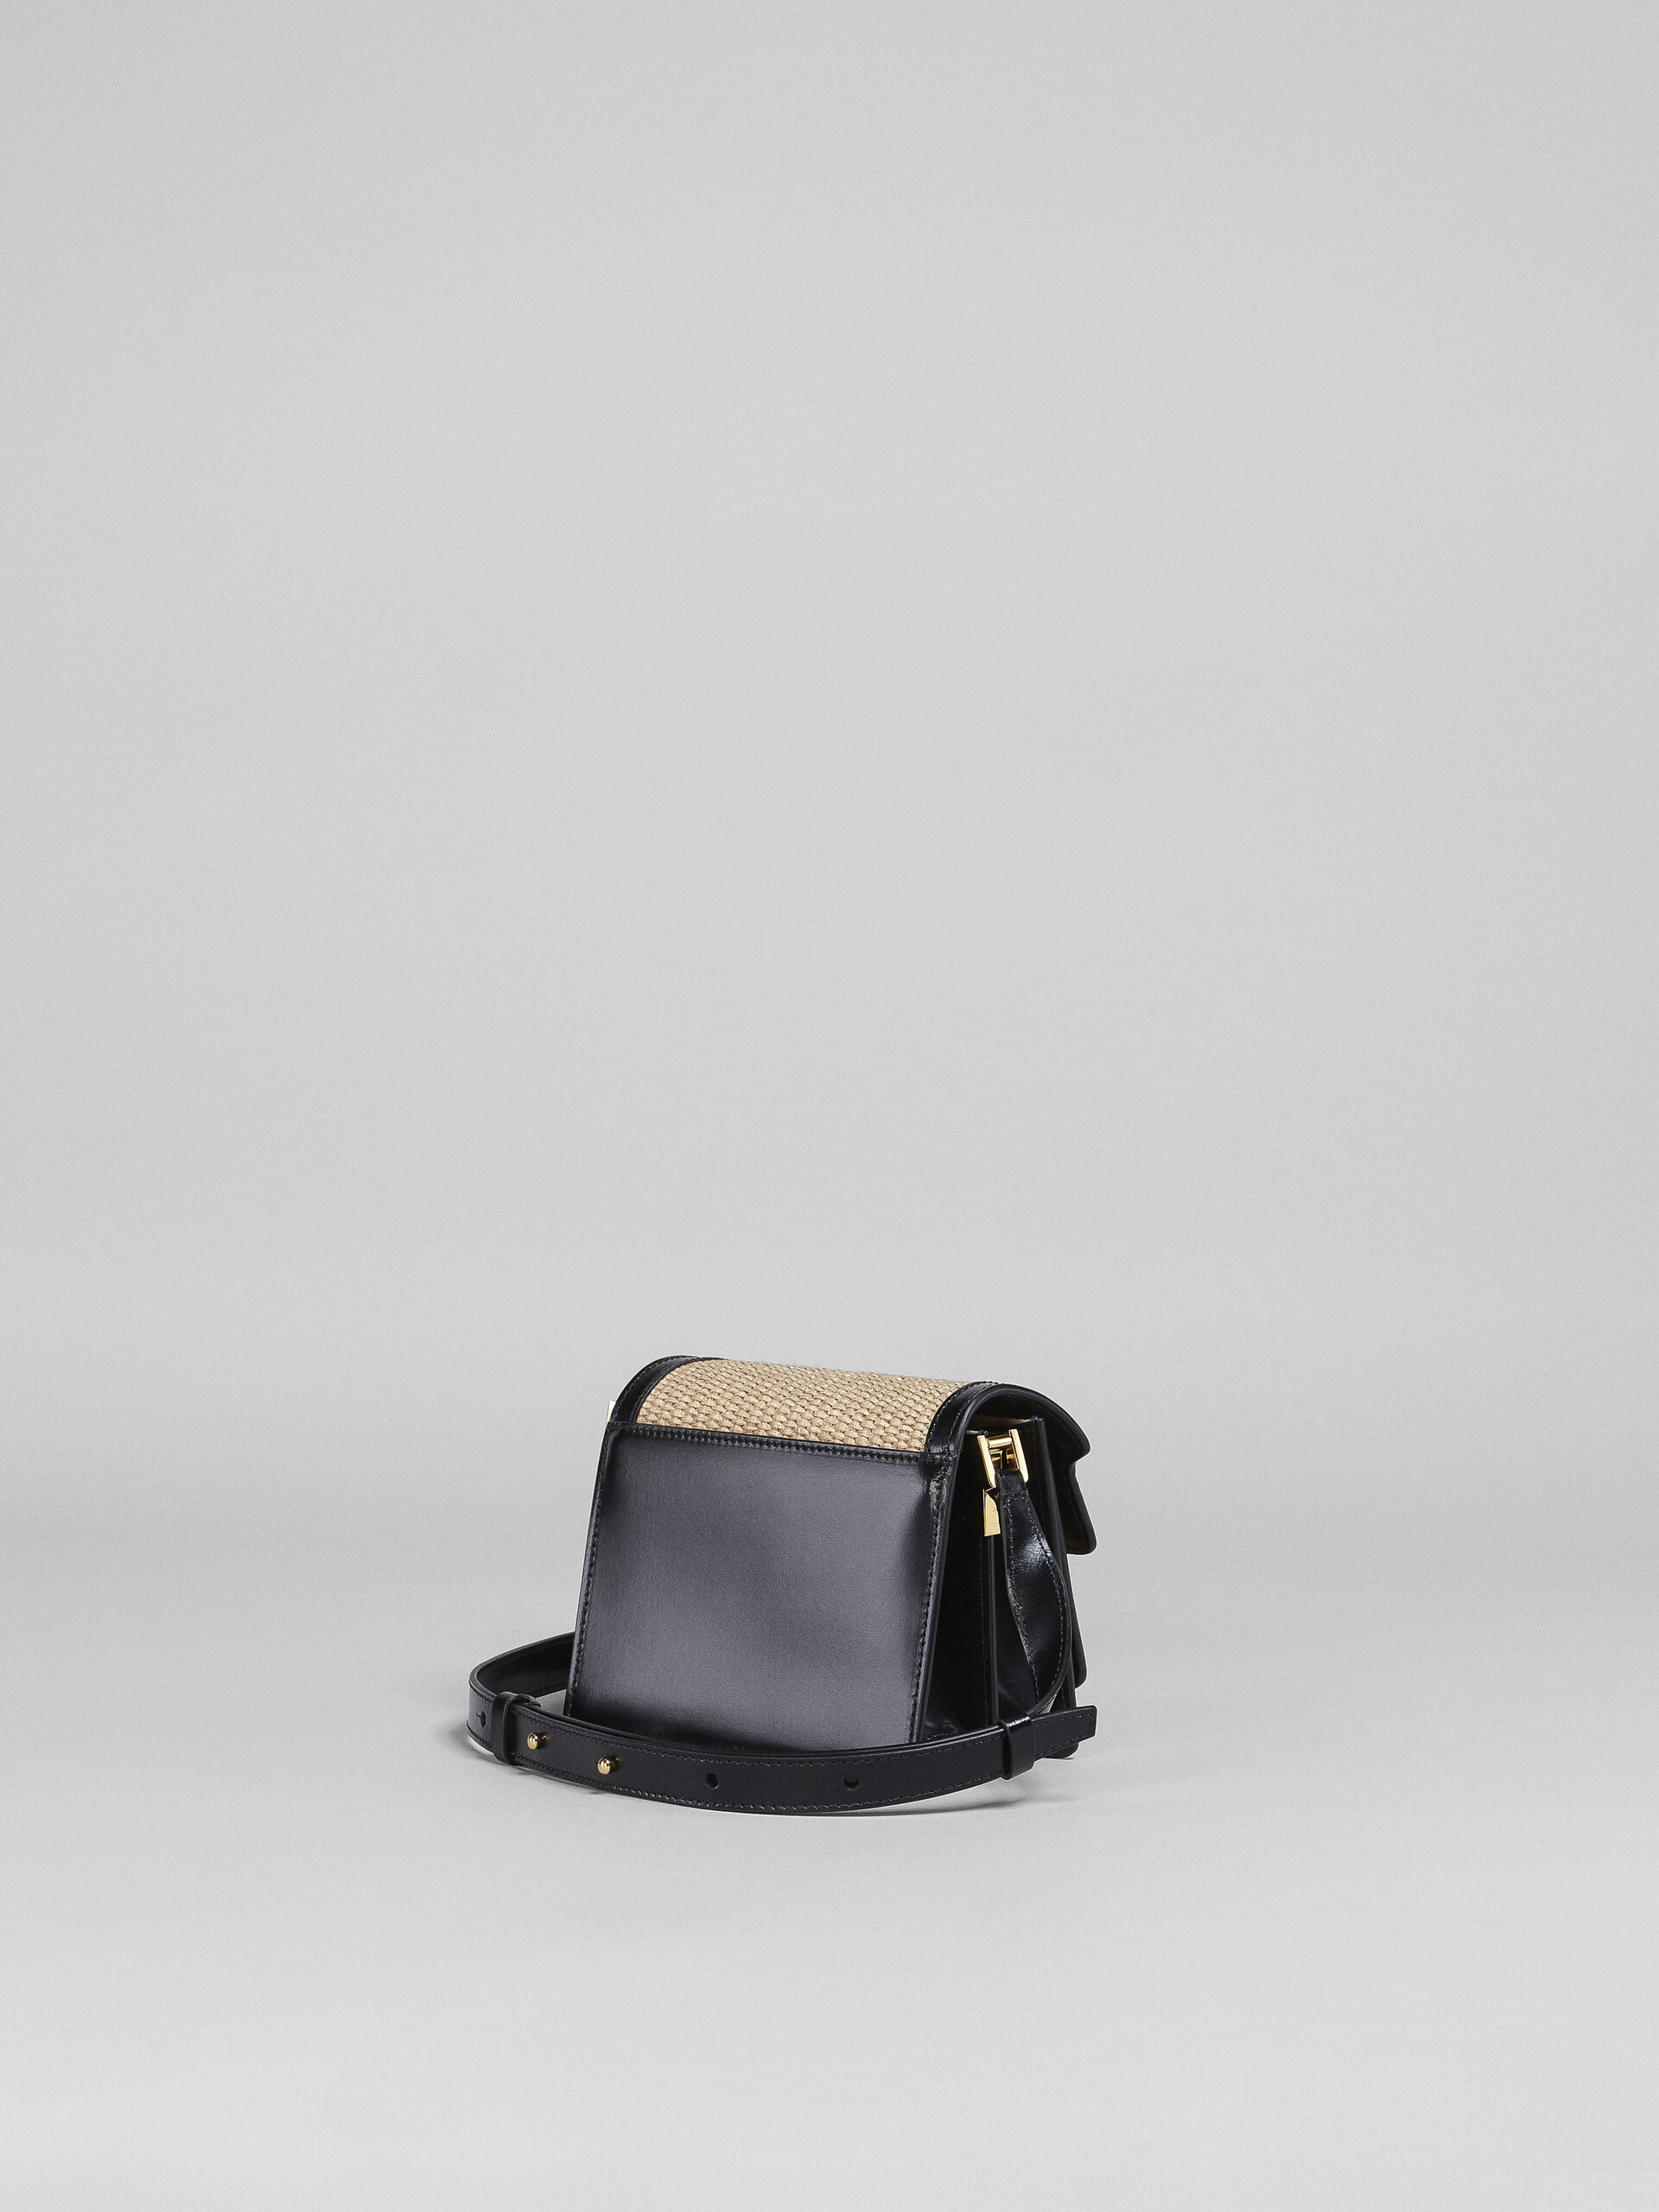 TRUNK SOFT mini bag in black leather and raffia - Shoulder Bag - Image 3